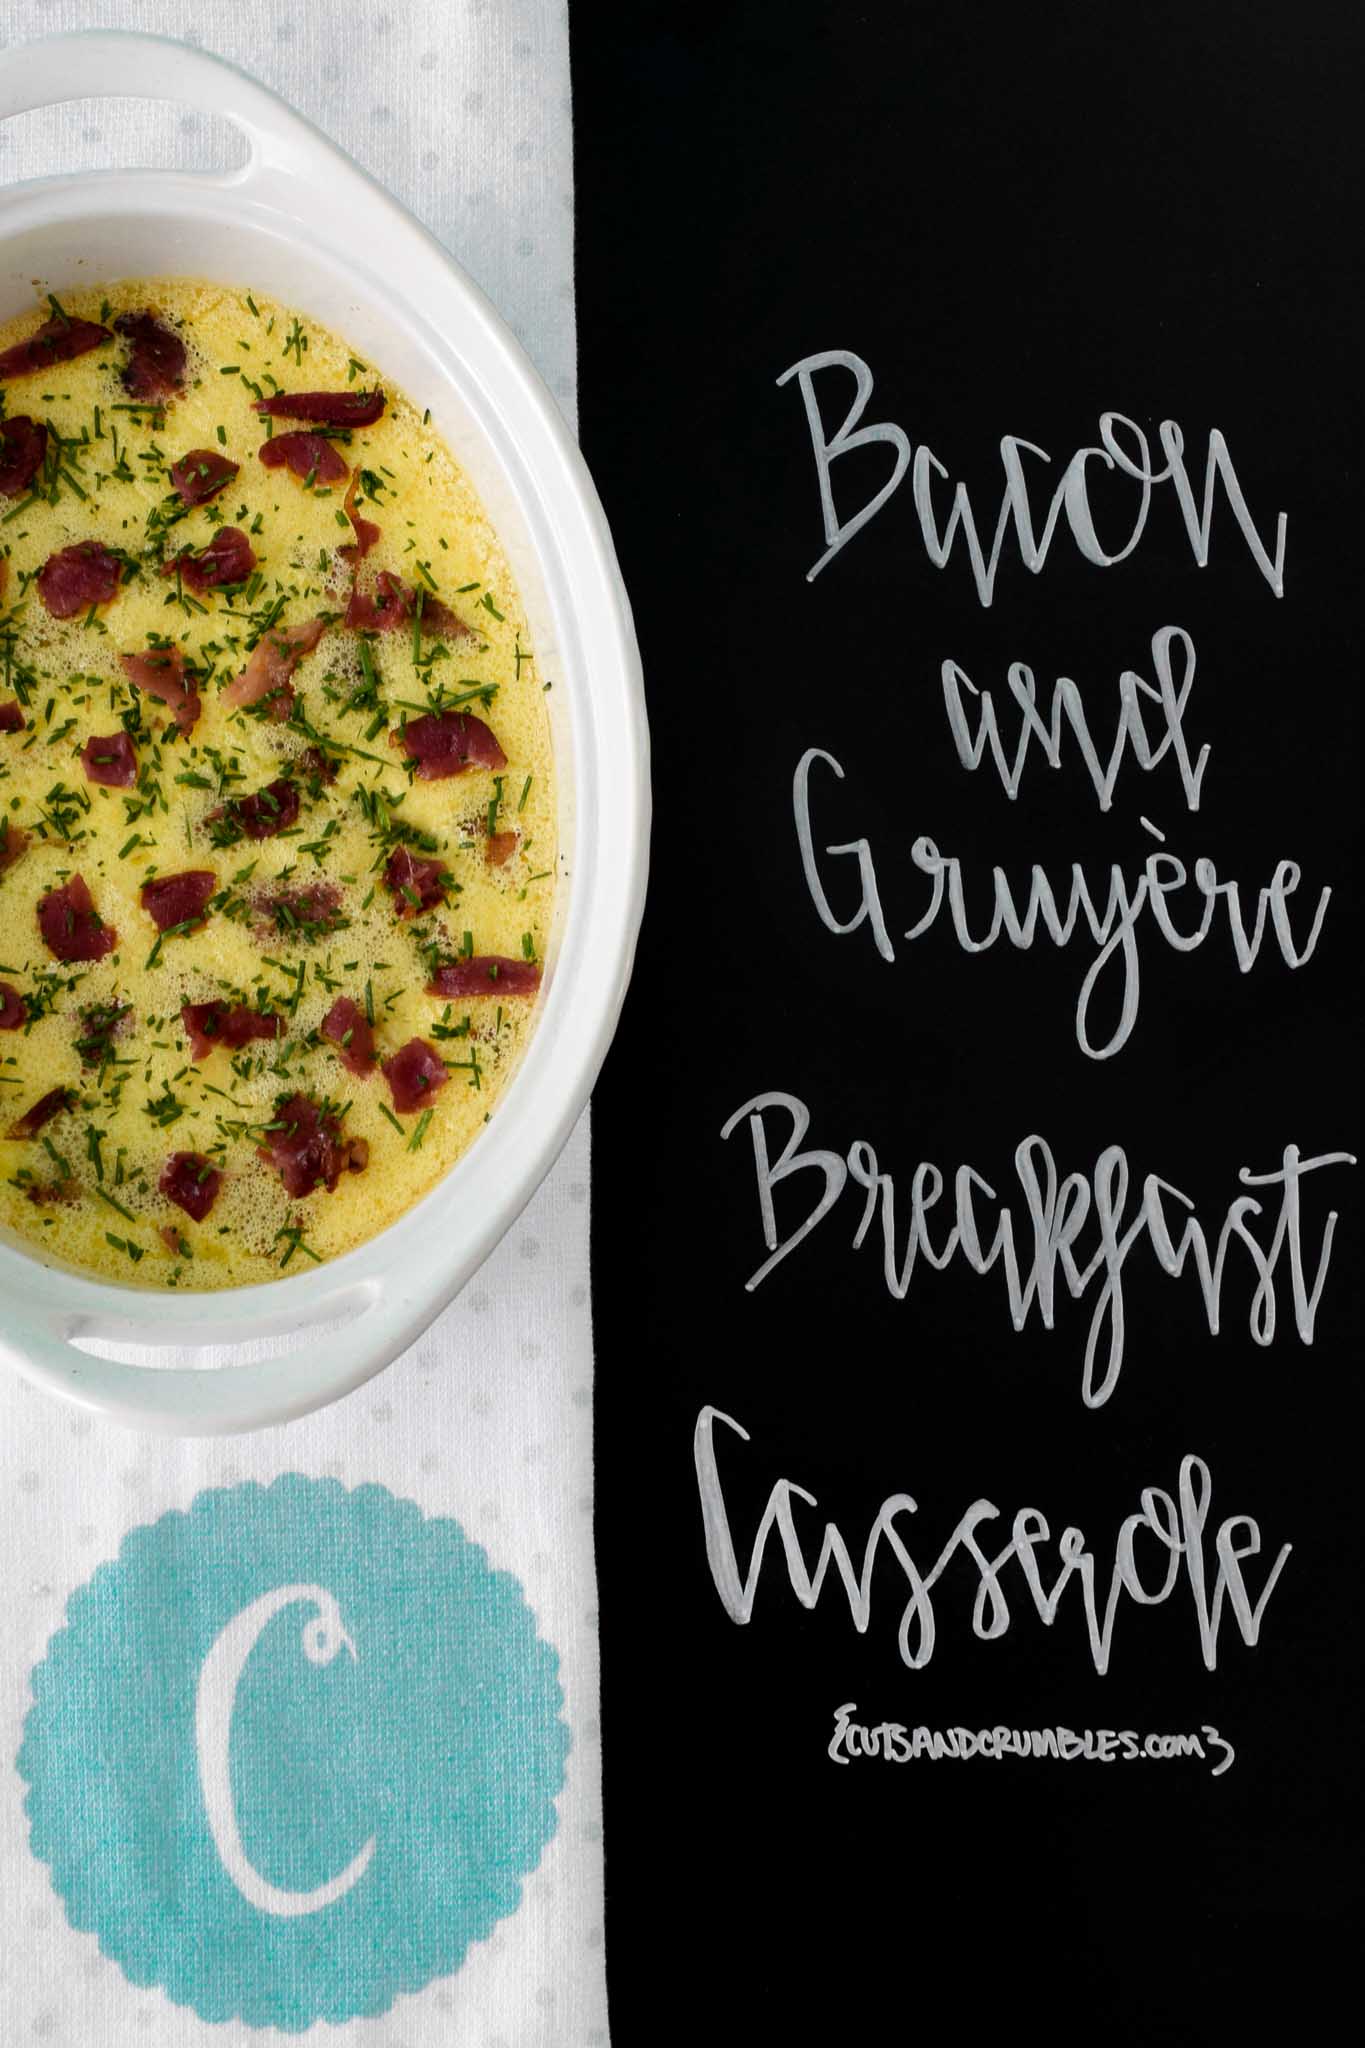 Bacon and Gruyere Breakfast Casserole with title written on chalkboard